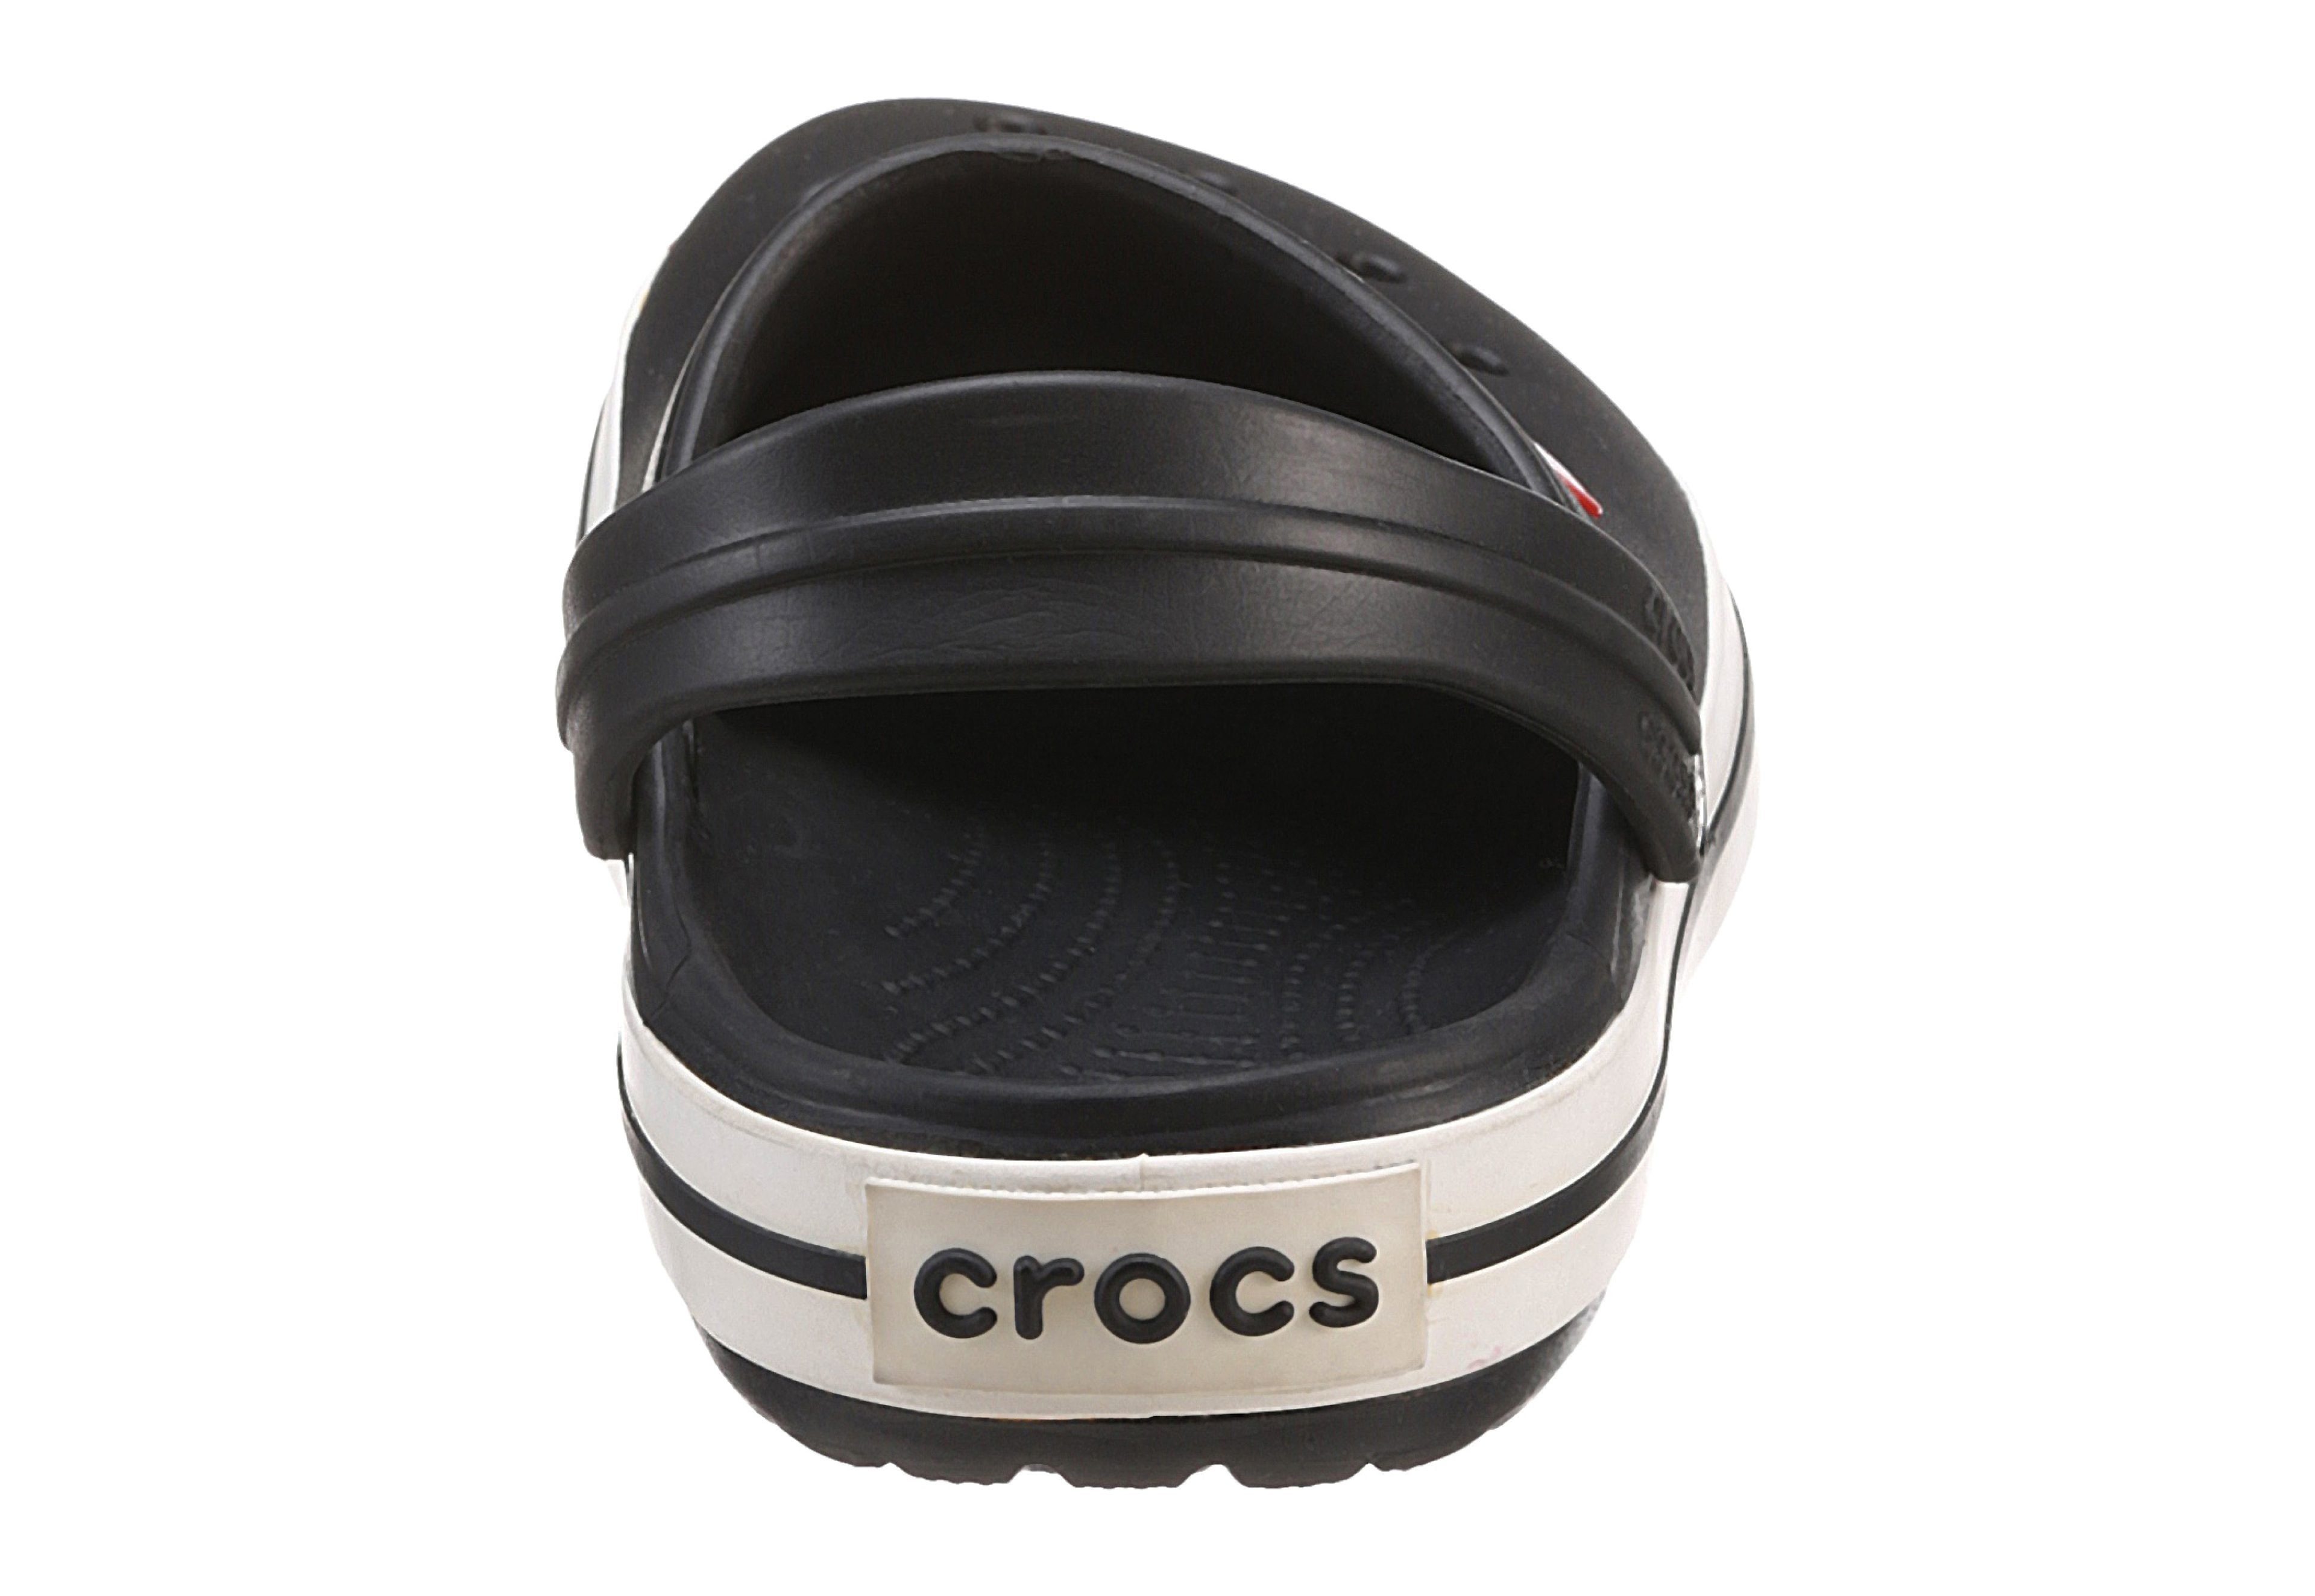 schwarz-weiß Laufsohle Clog mit Crocband Crocs farbiger